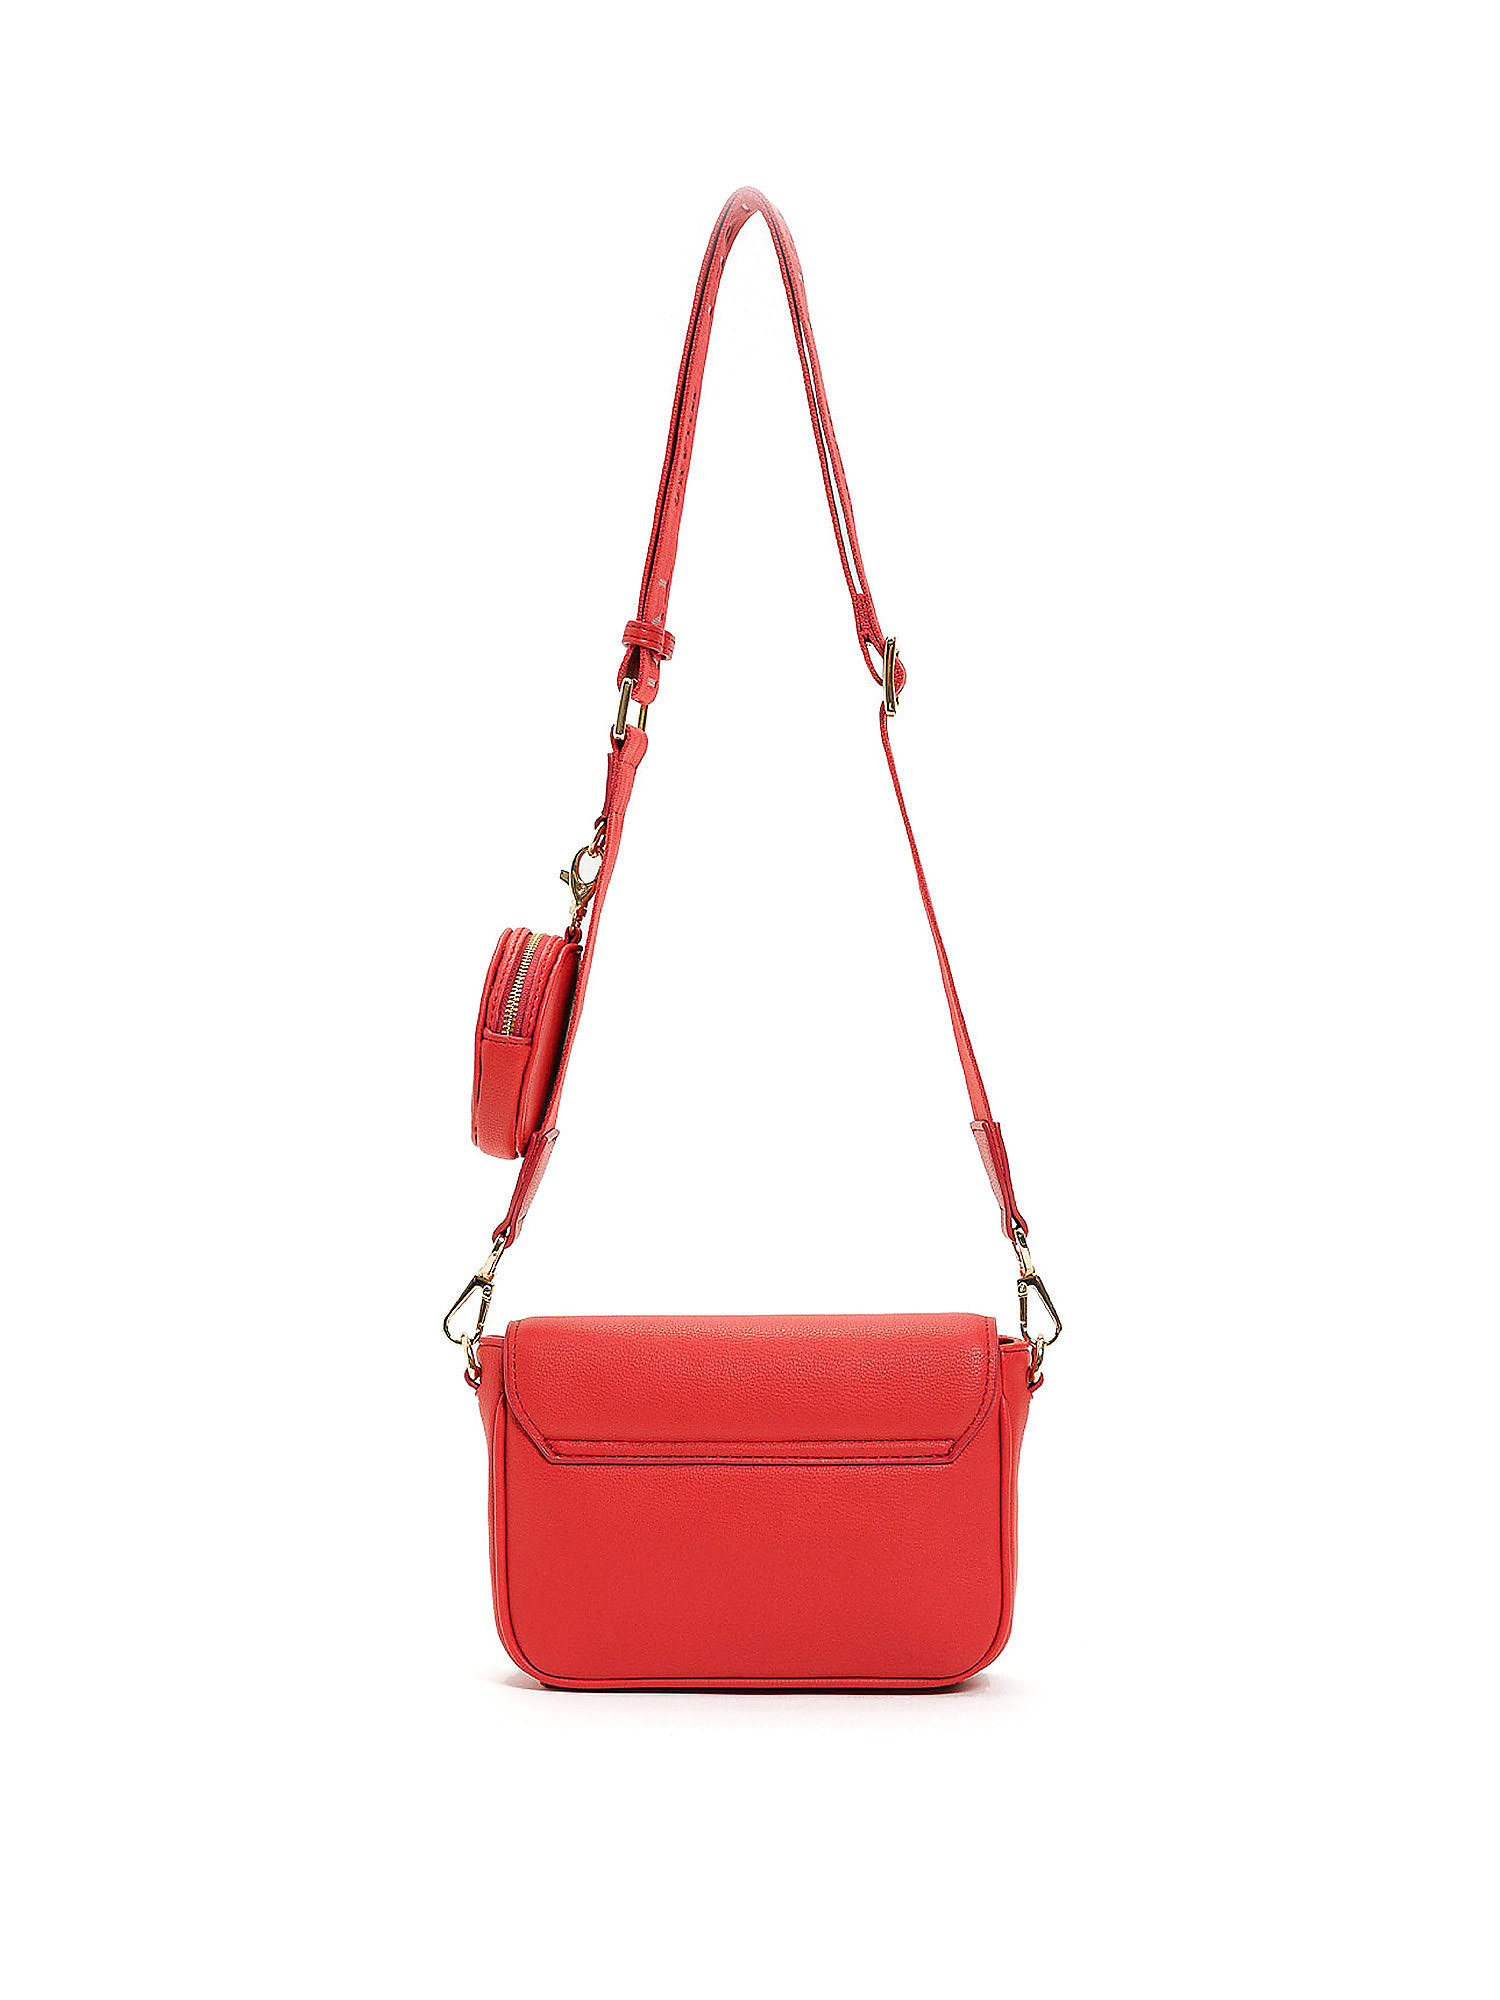 Mini bag a tracolla con portamonete, Rosso, large image number 1